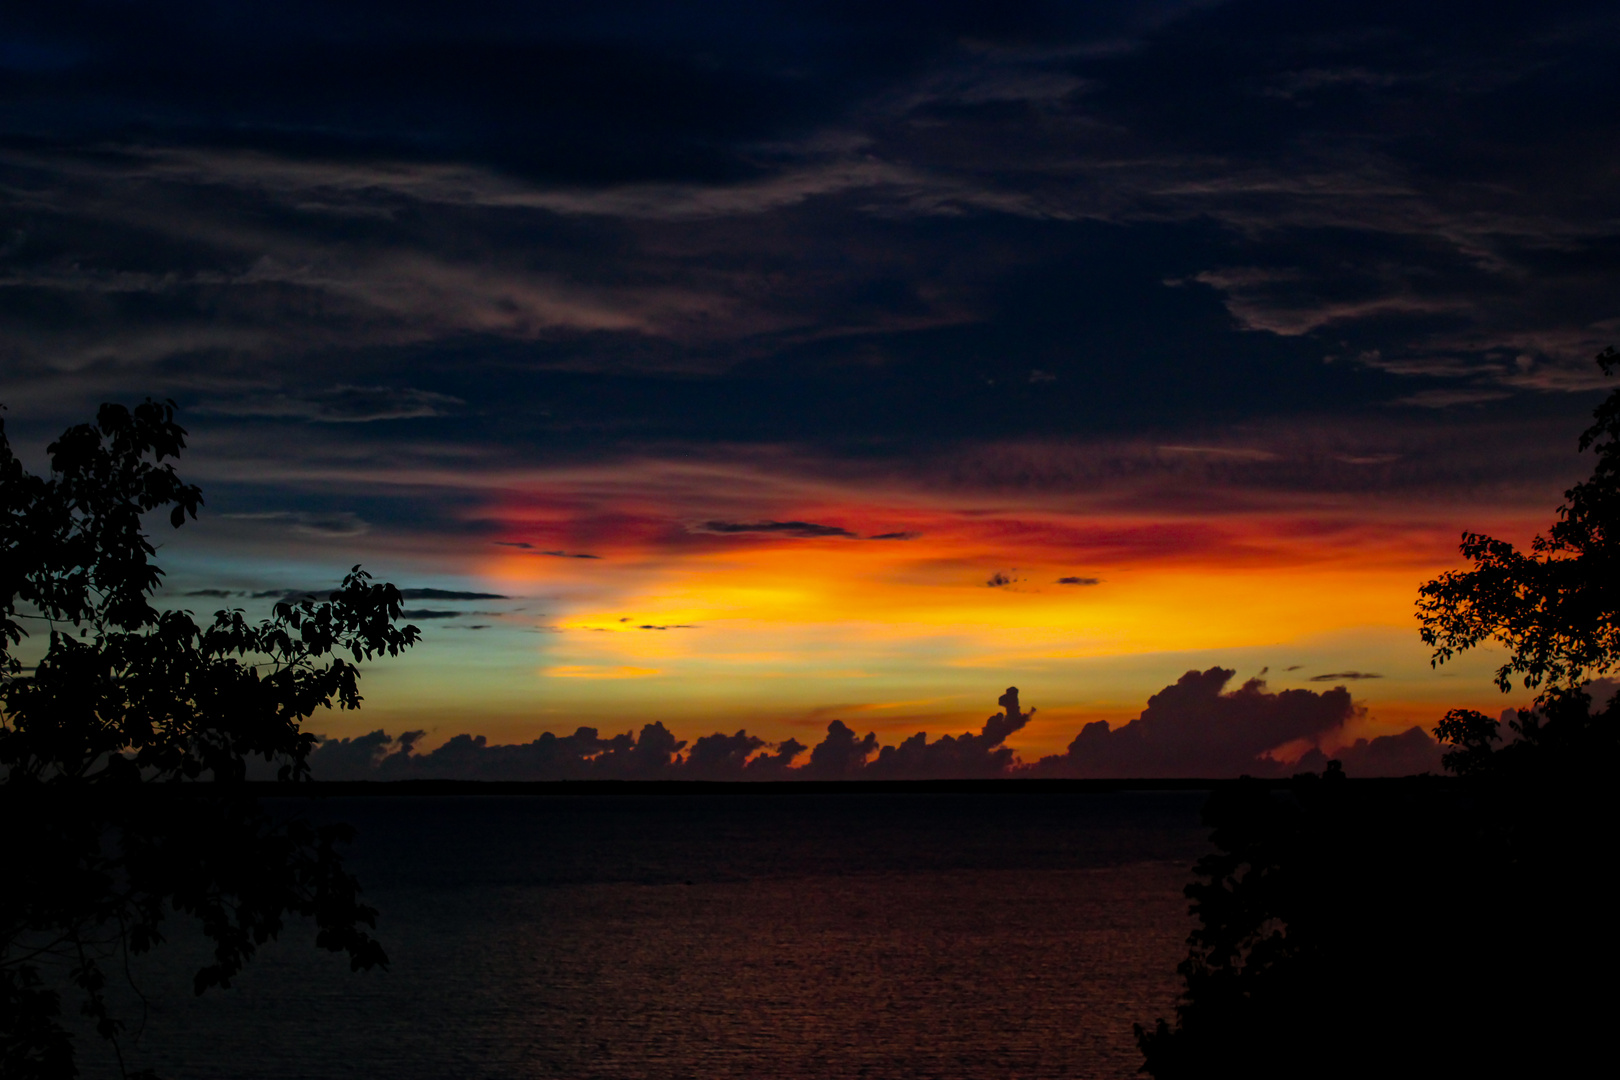 Sunset / Twilight, Bicentennial Park, Darwin - 01-12-2014